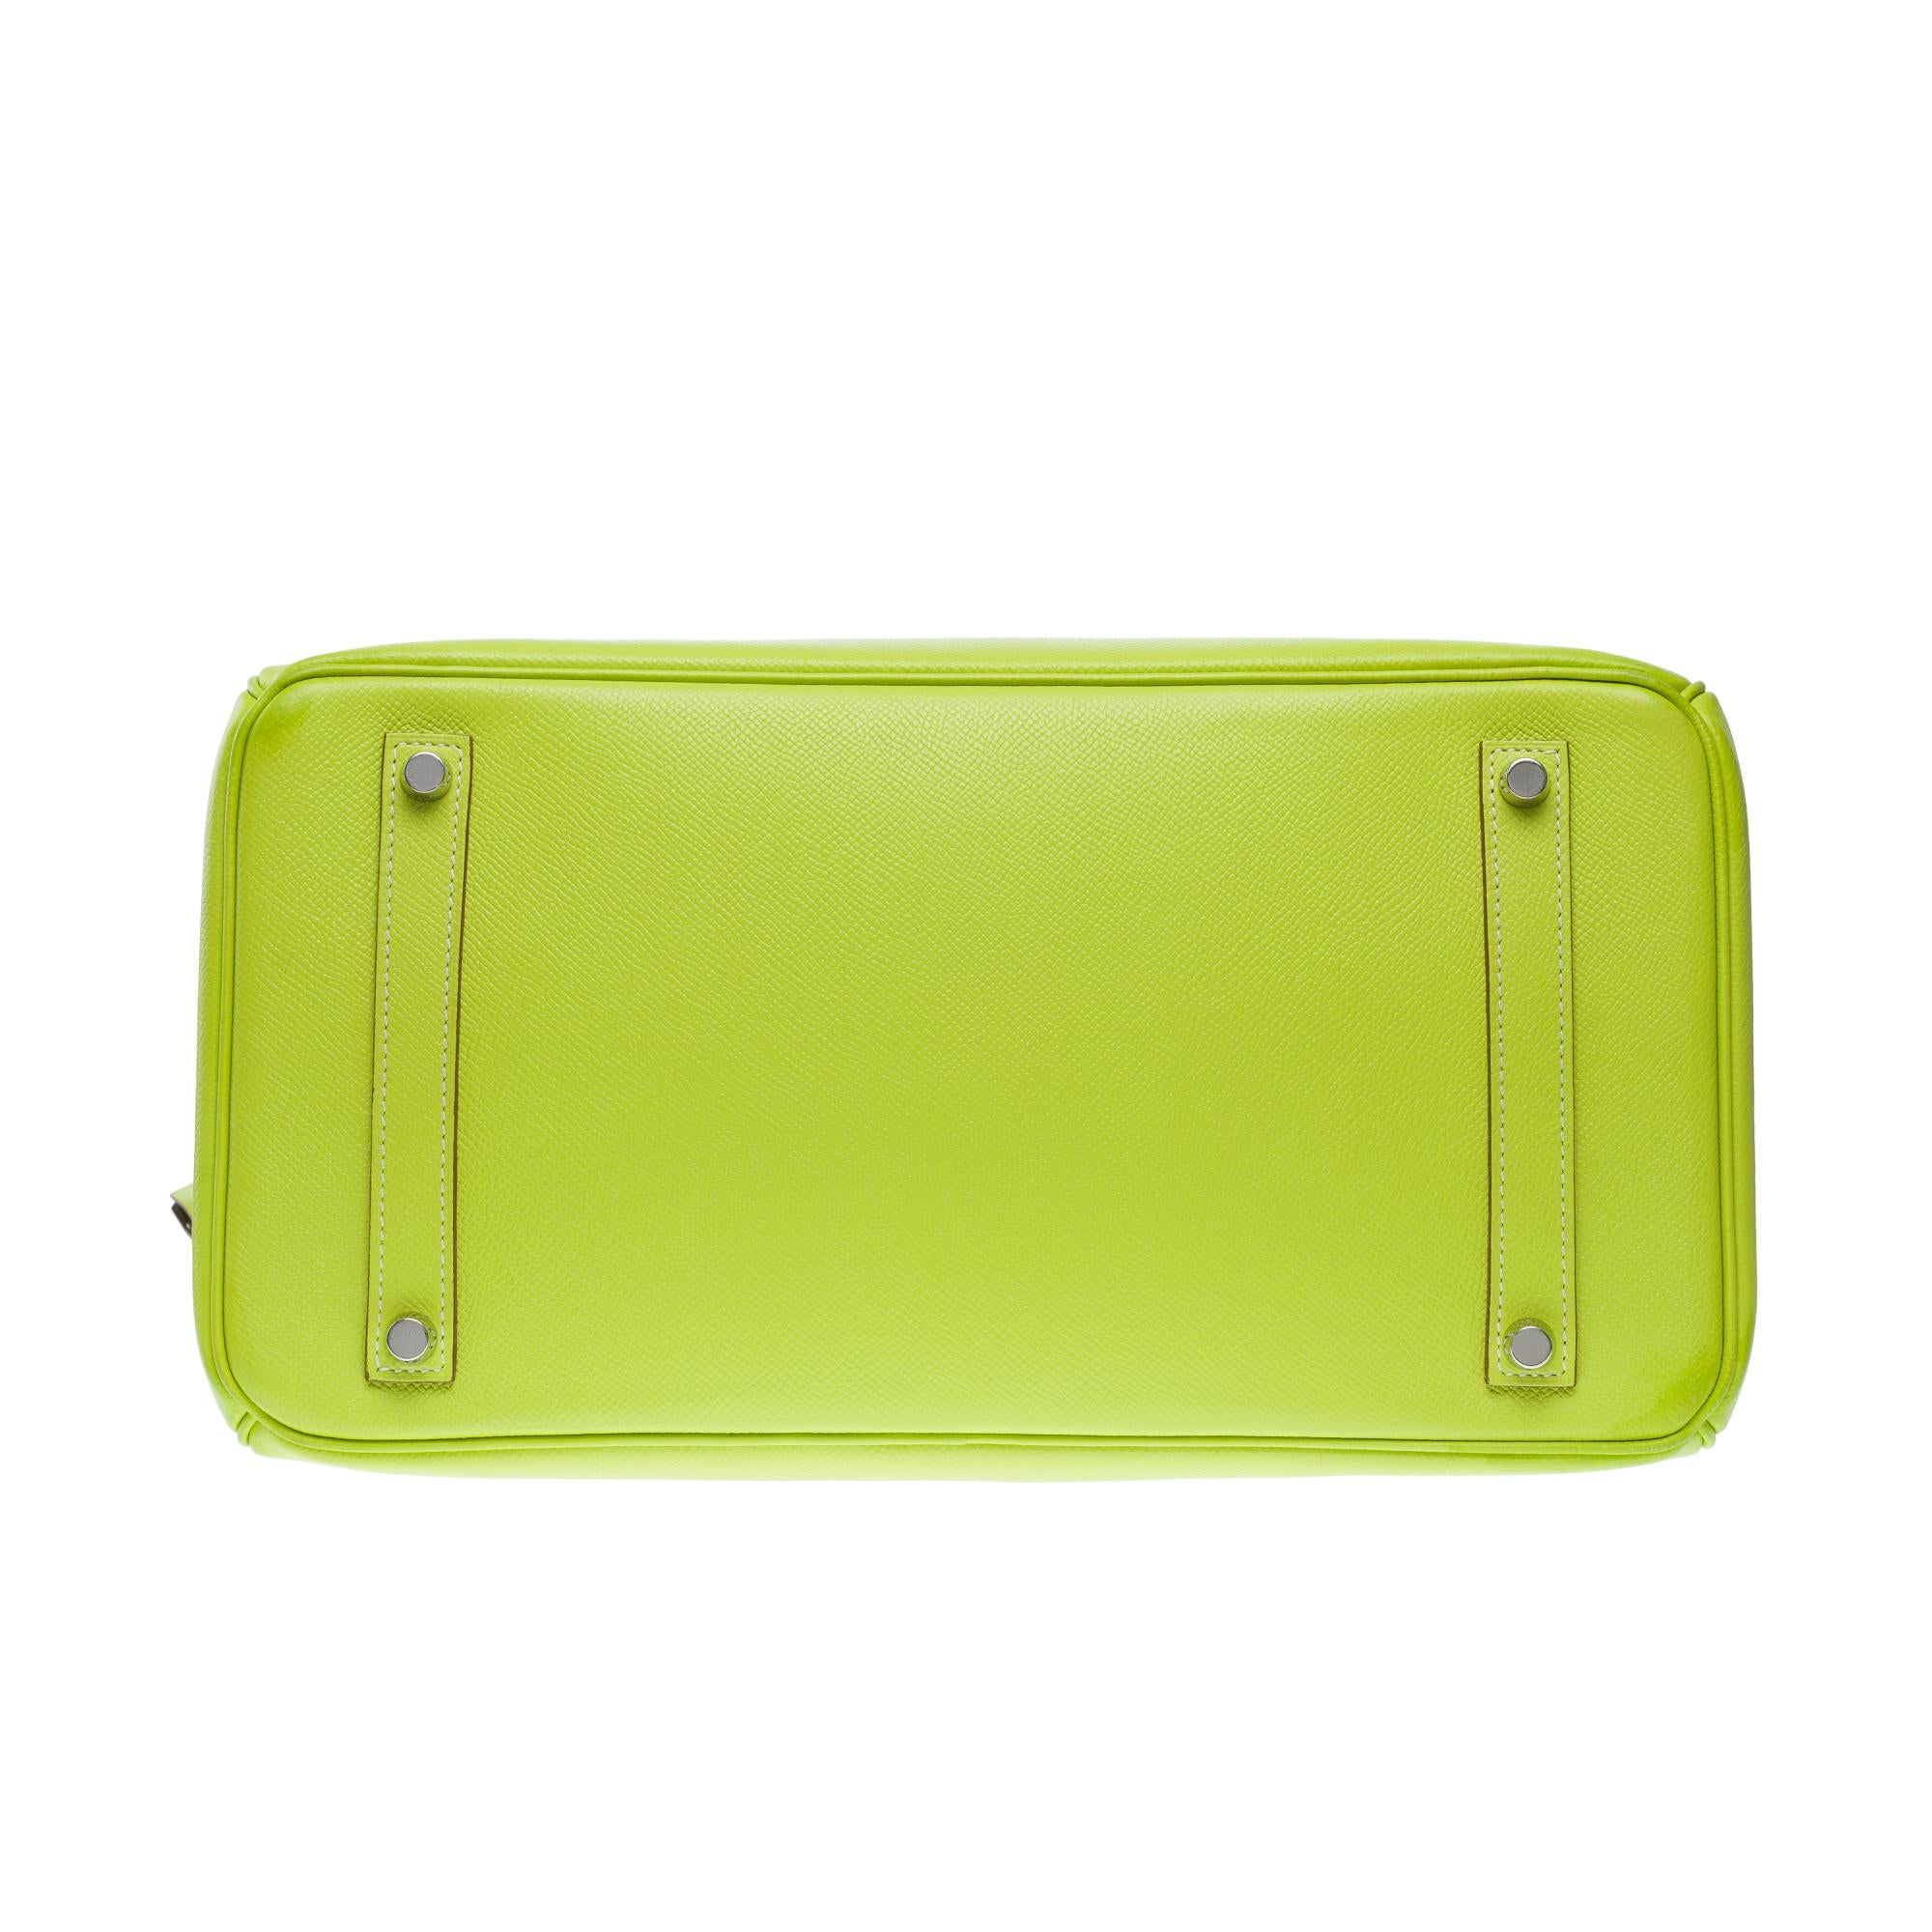 Candy limited edition Hermès Birkin 35 handbag in Kiwi Green epsom leather, SHW 6